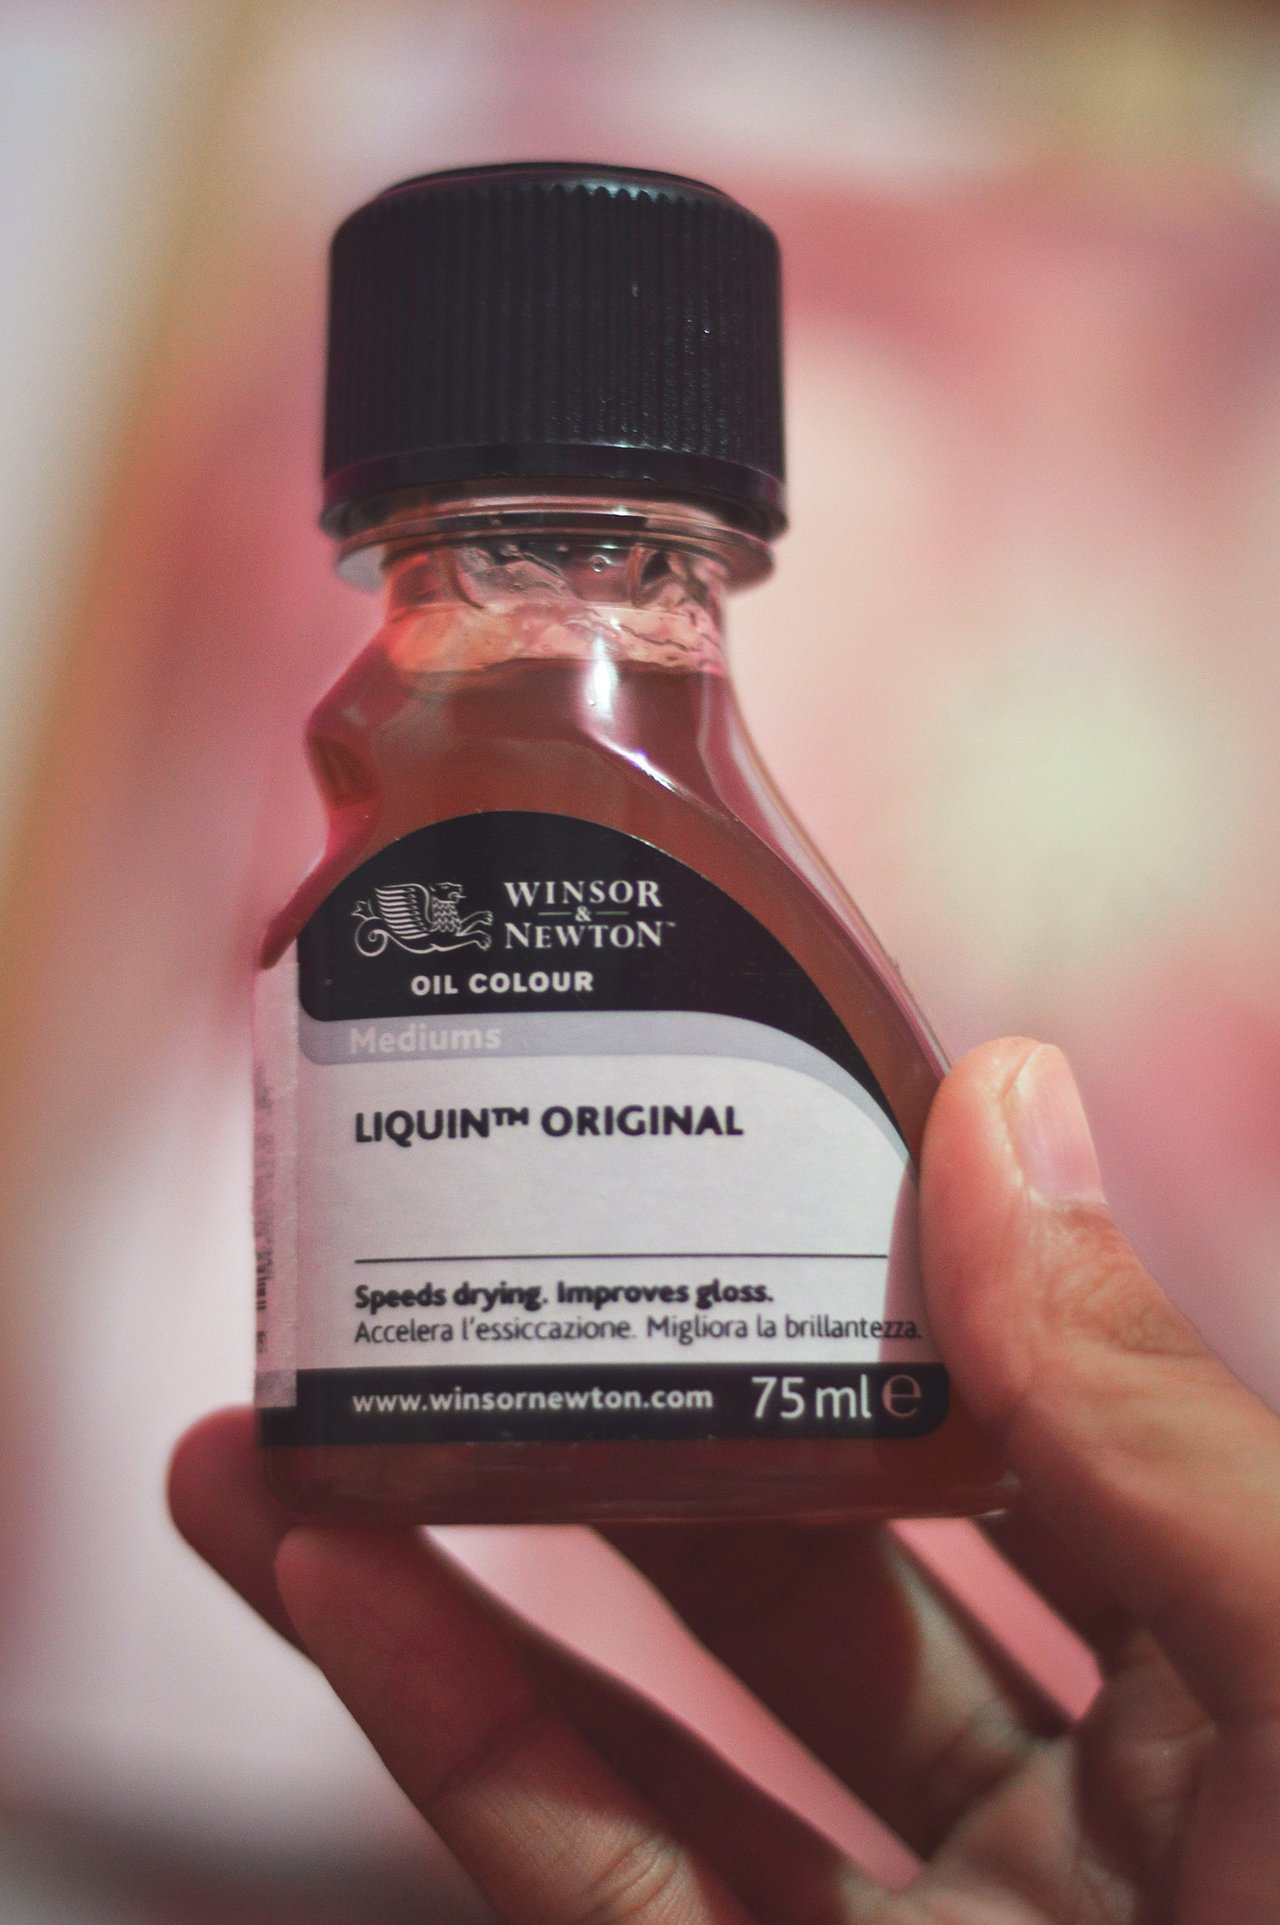 Winsor & Newton Liquin Original fles